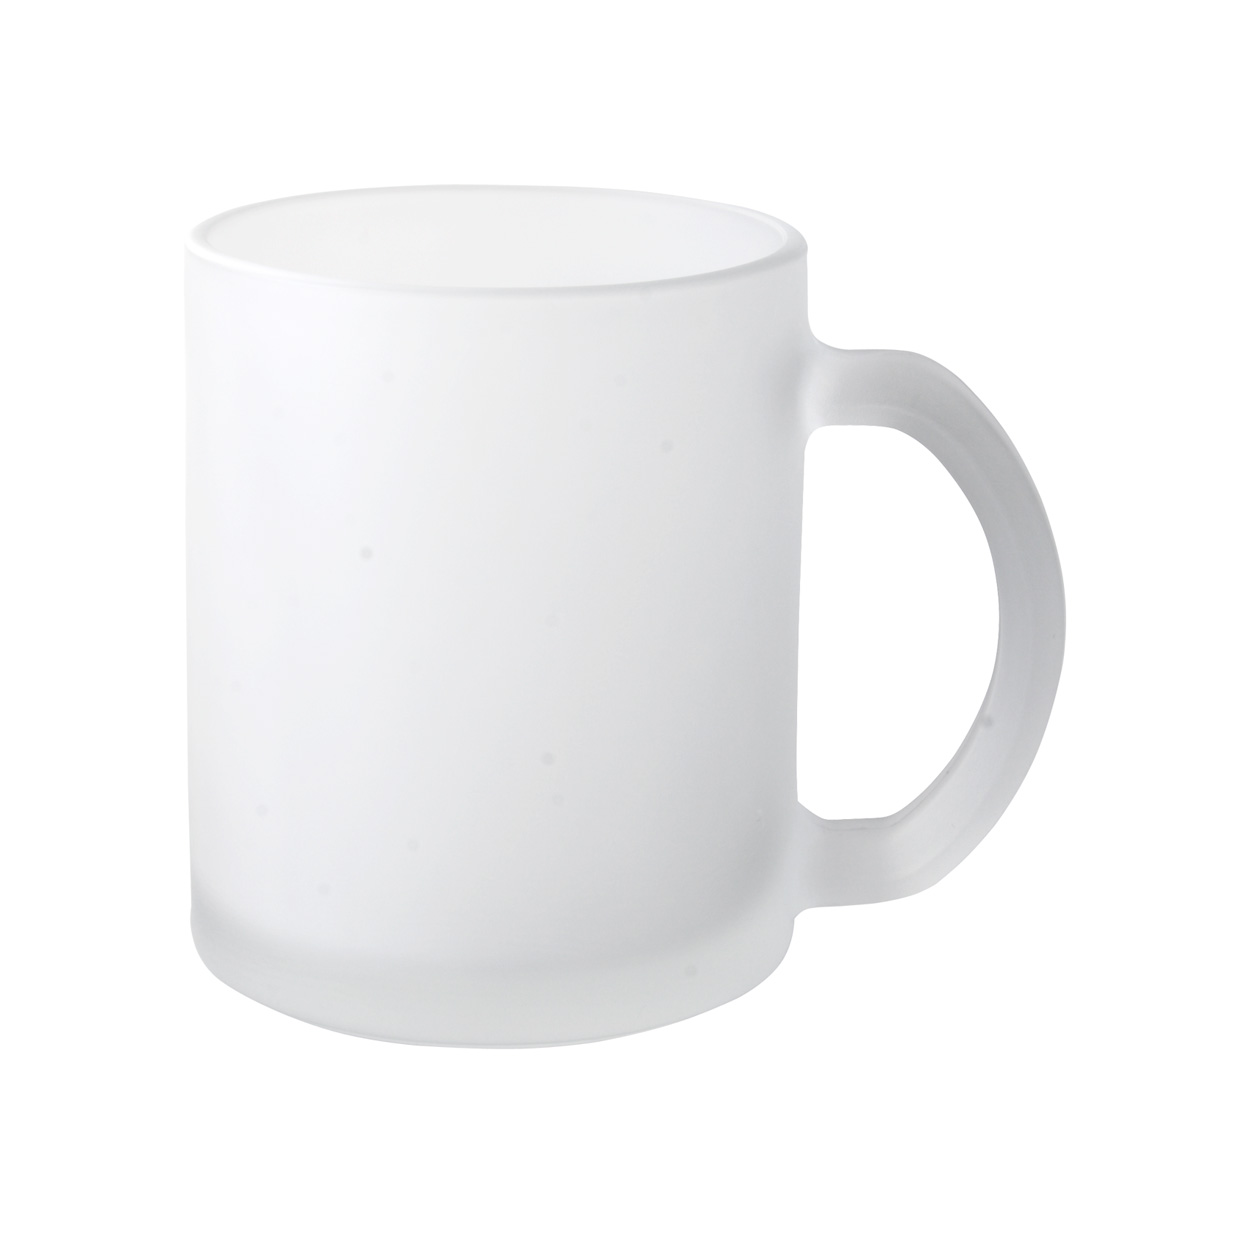 Glass mug FORSA, 300ml - white